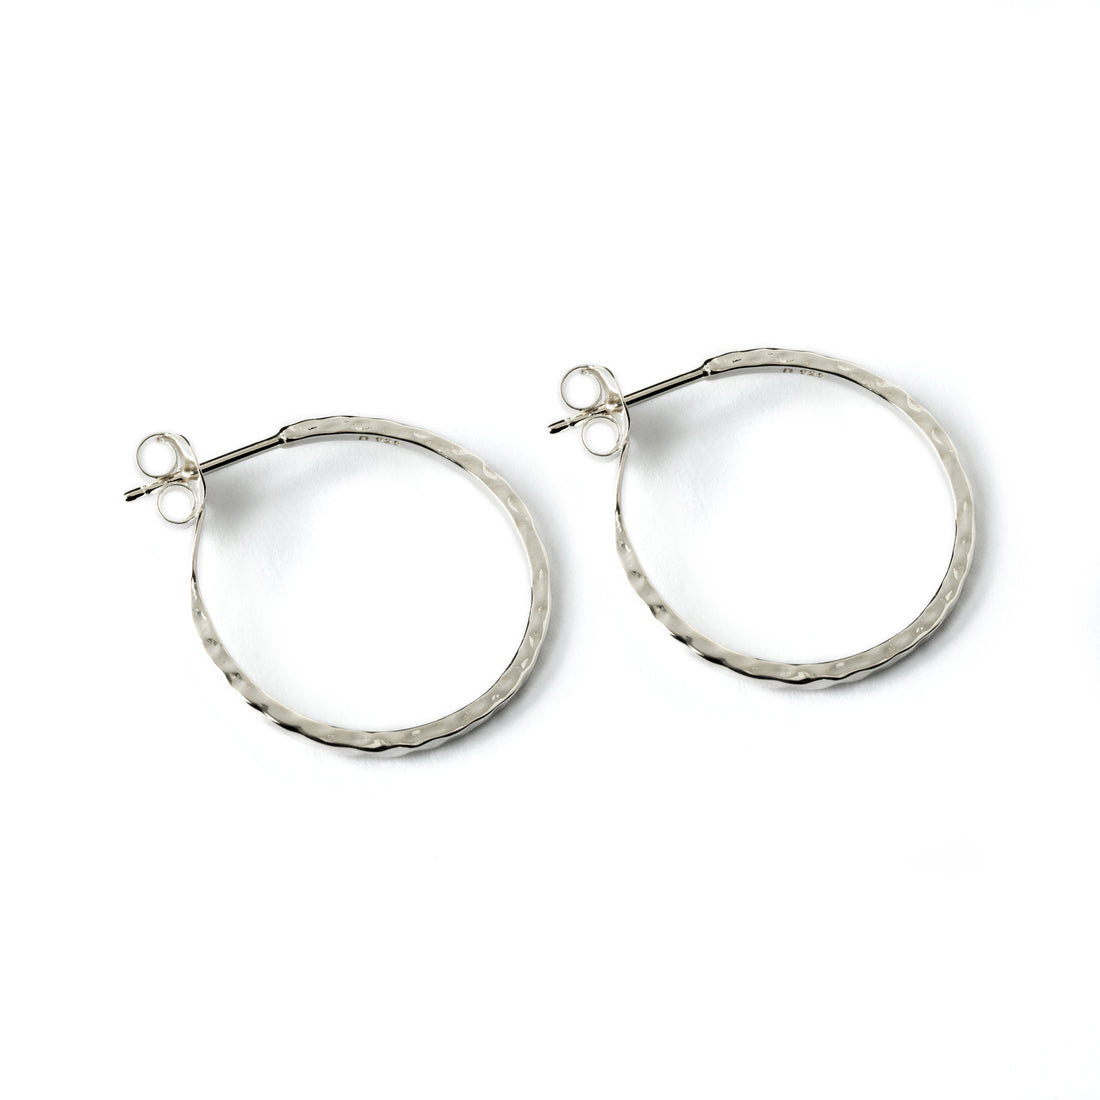 Hammered-silver-open-hoops-earrings